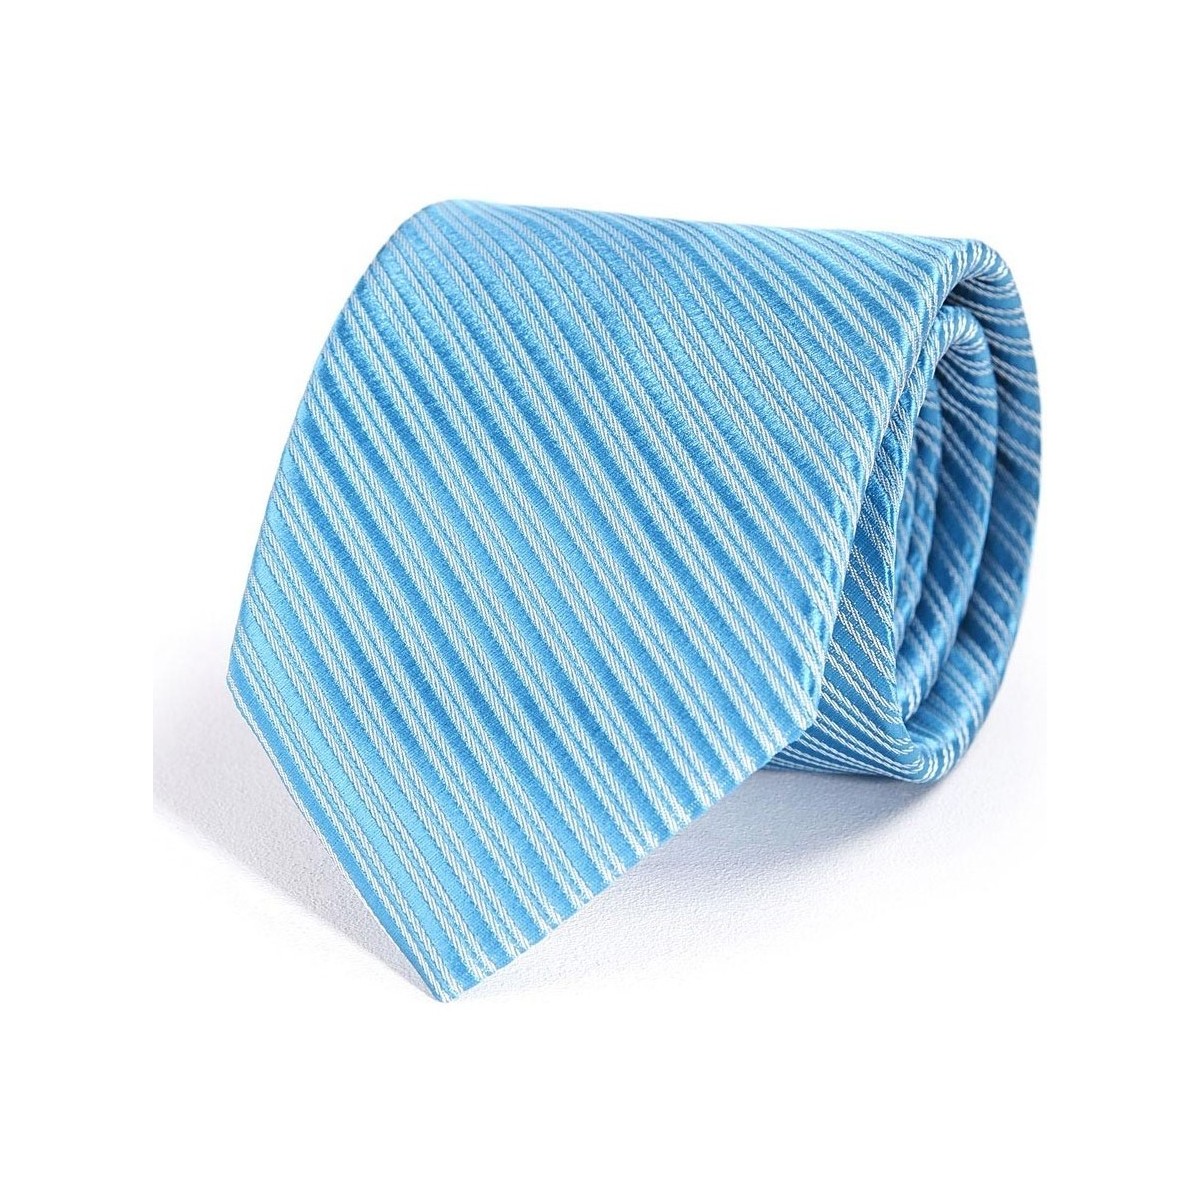 Vêtements Homme devenez membre gratuitement Cravate Faux-Uni Bleu